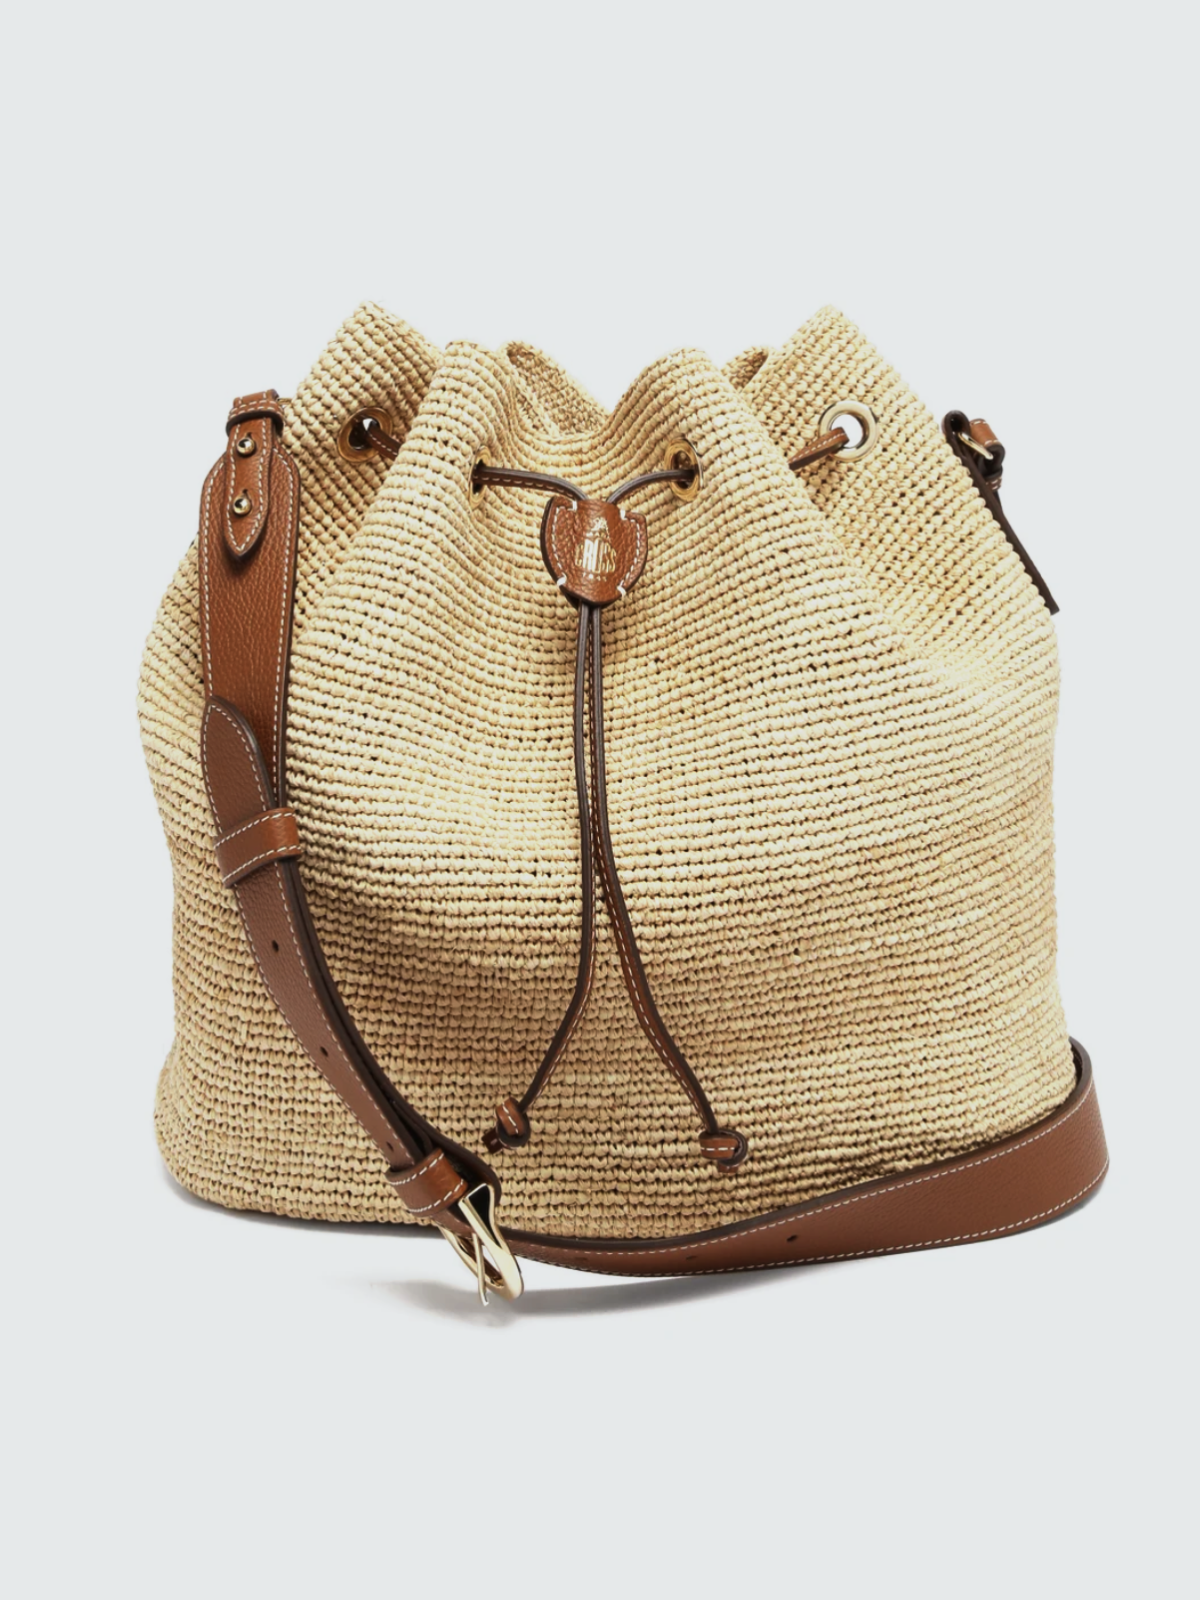 Выбор BURO.: 15 сумок для беззаботного отдыха на пляже (фото 6)